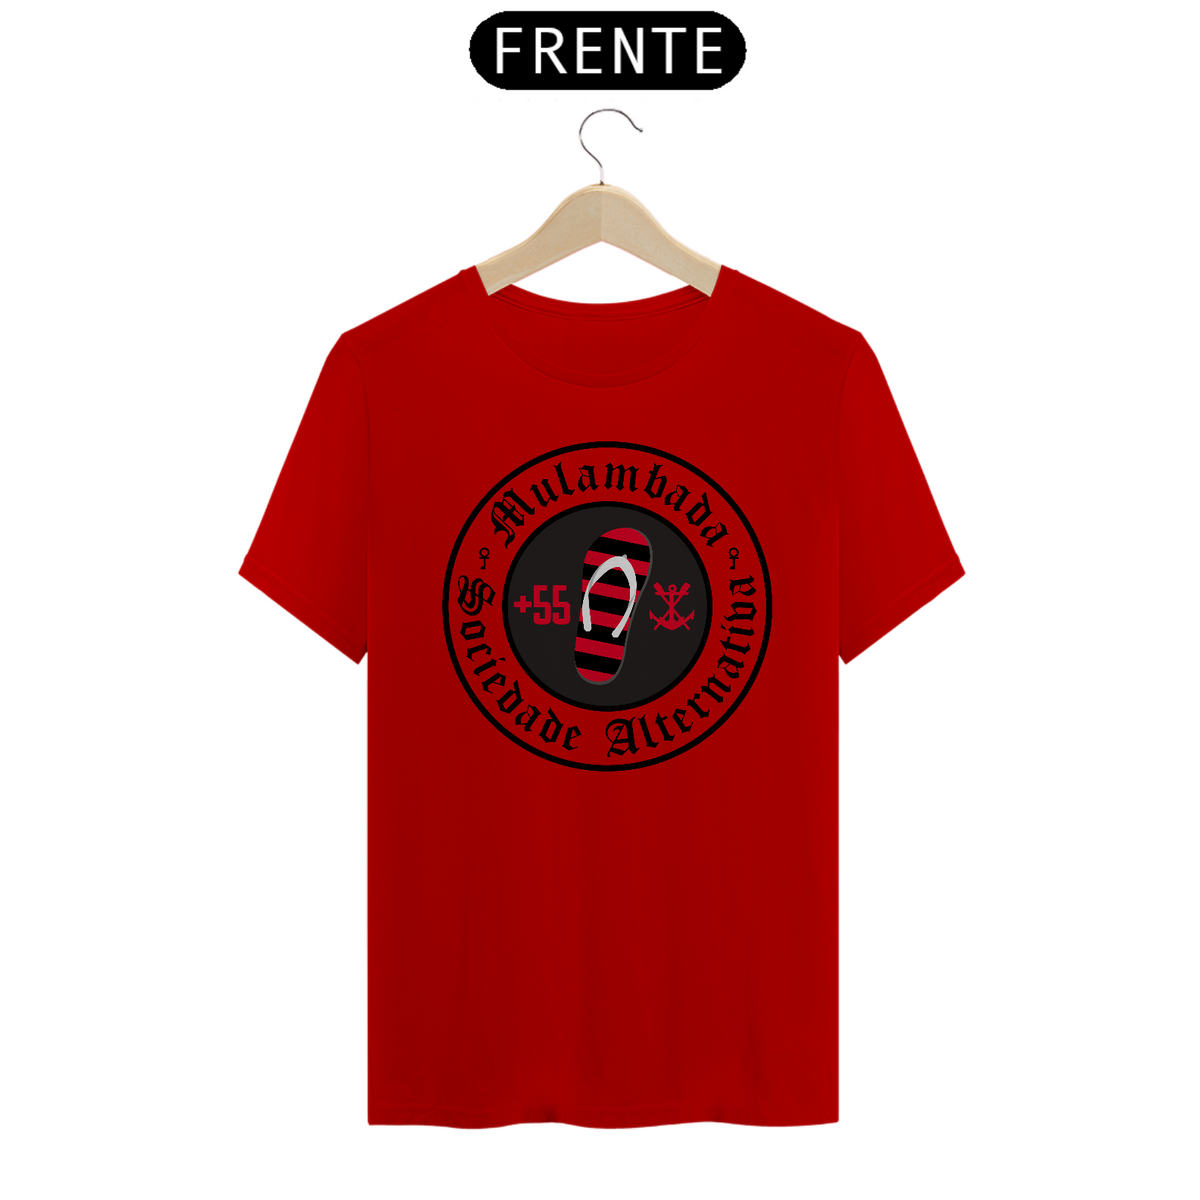 Nome do produto: Sociedade Alternativa (+55) - T-Shirt Quality - Vermelho